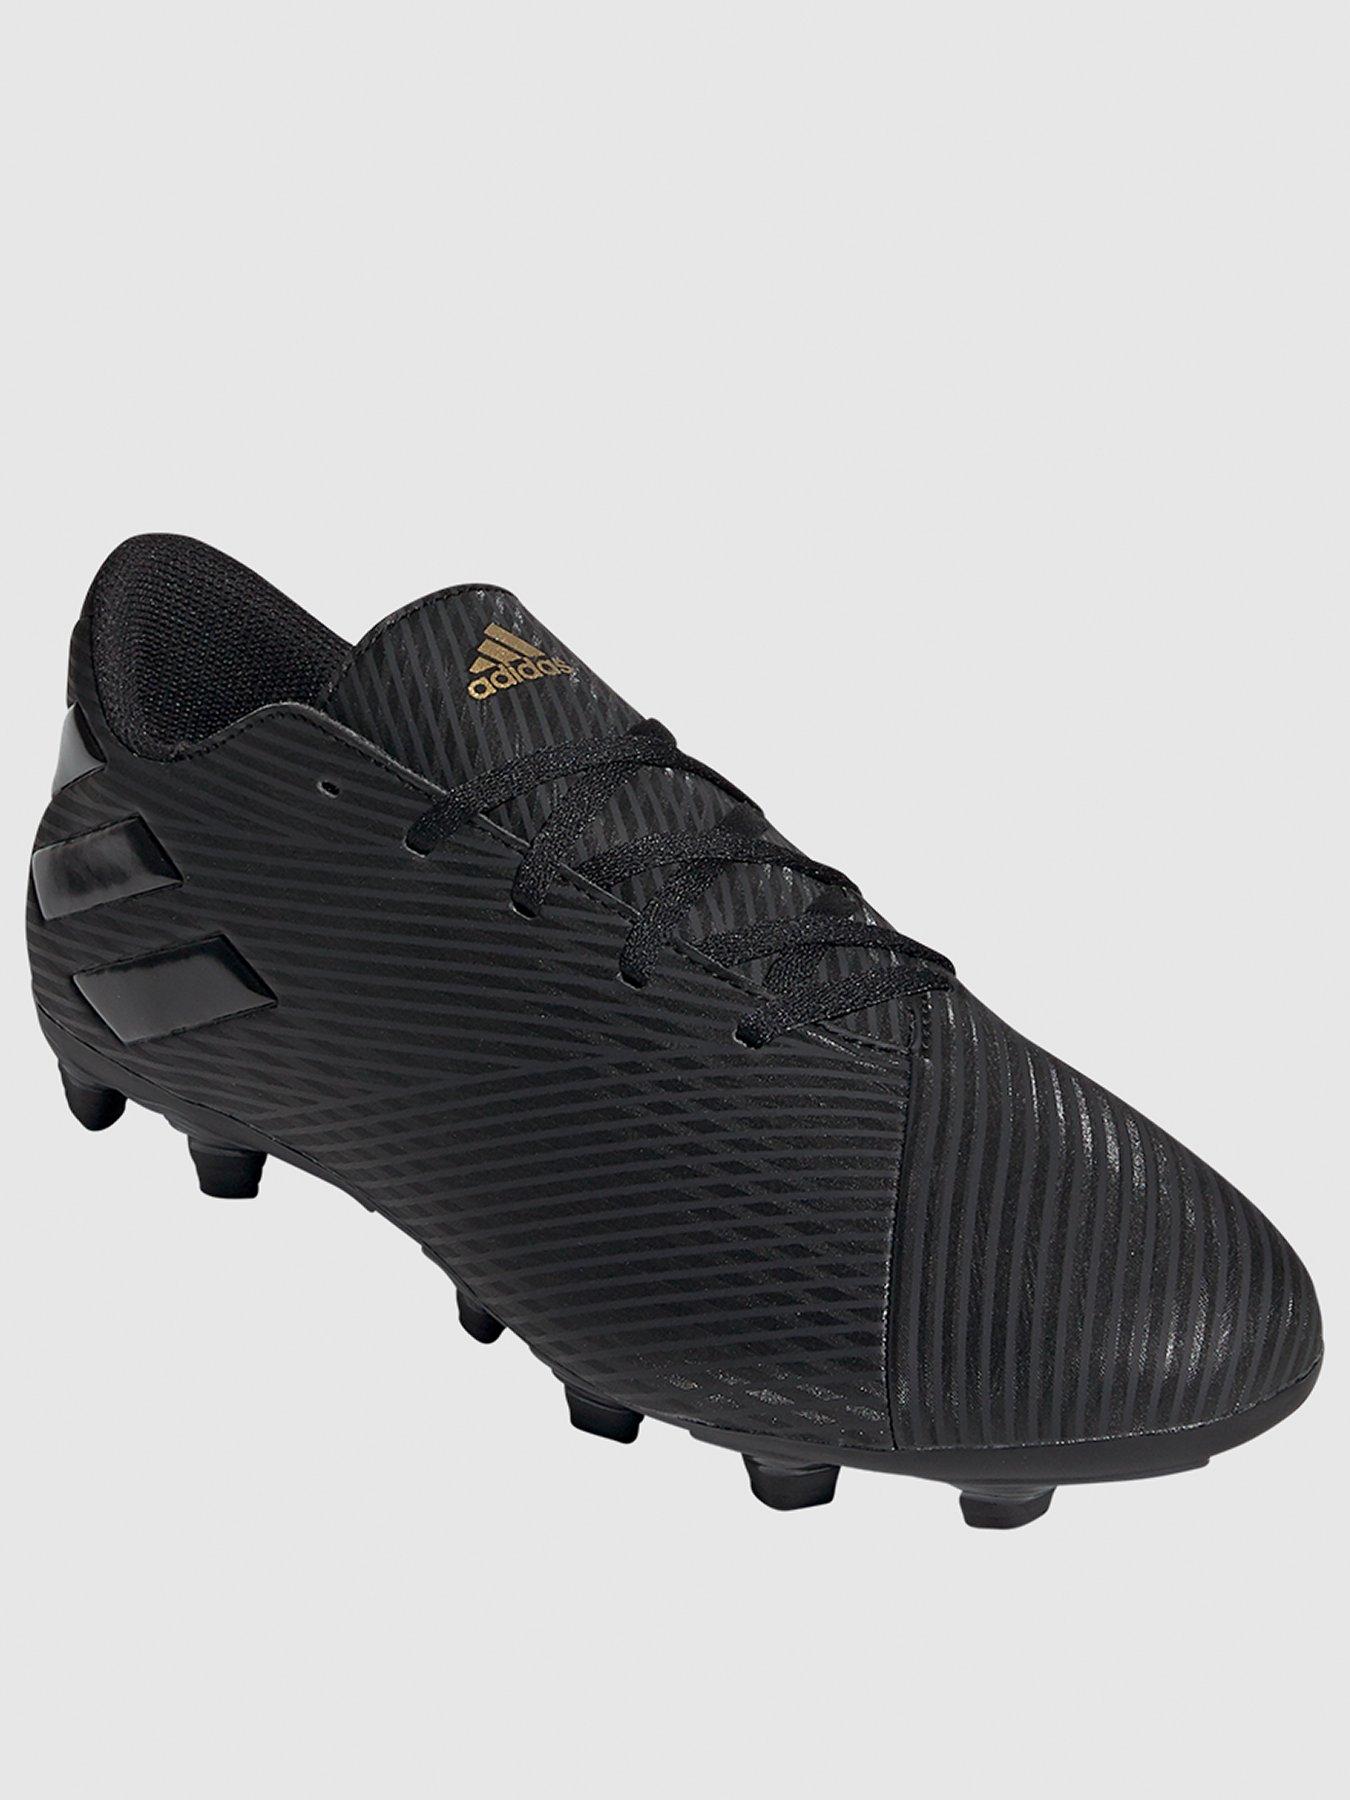 black nemeziz football boots